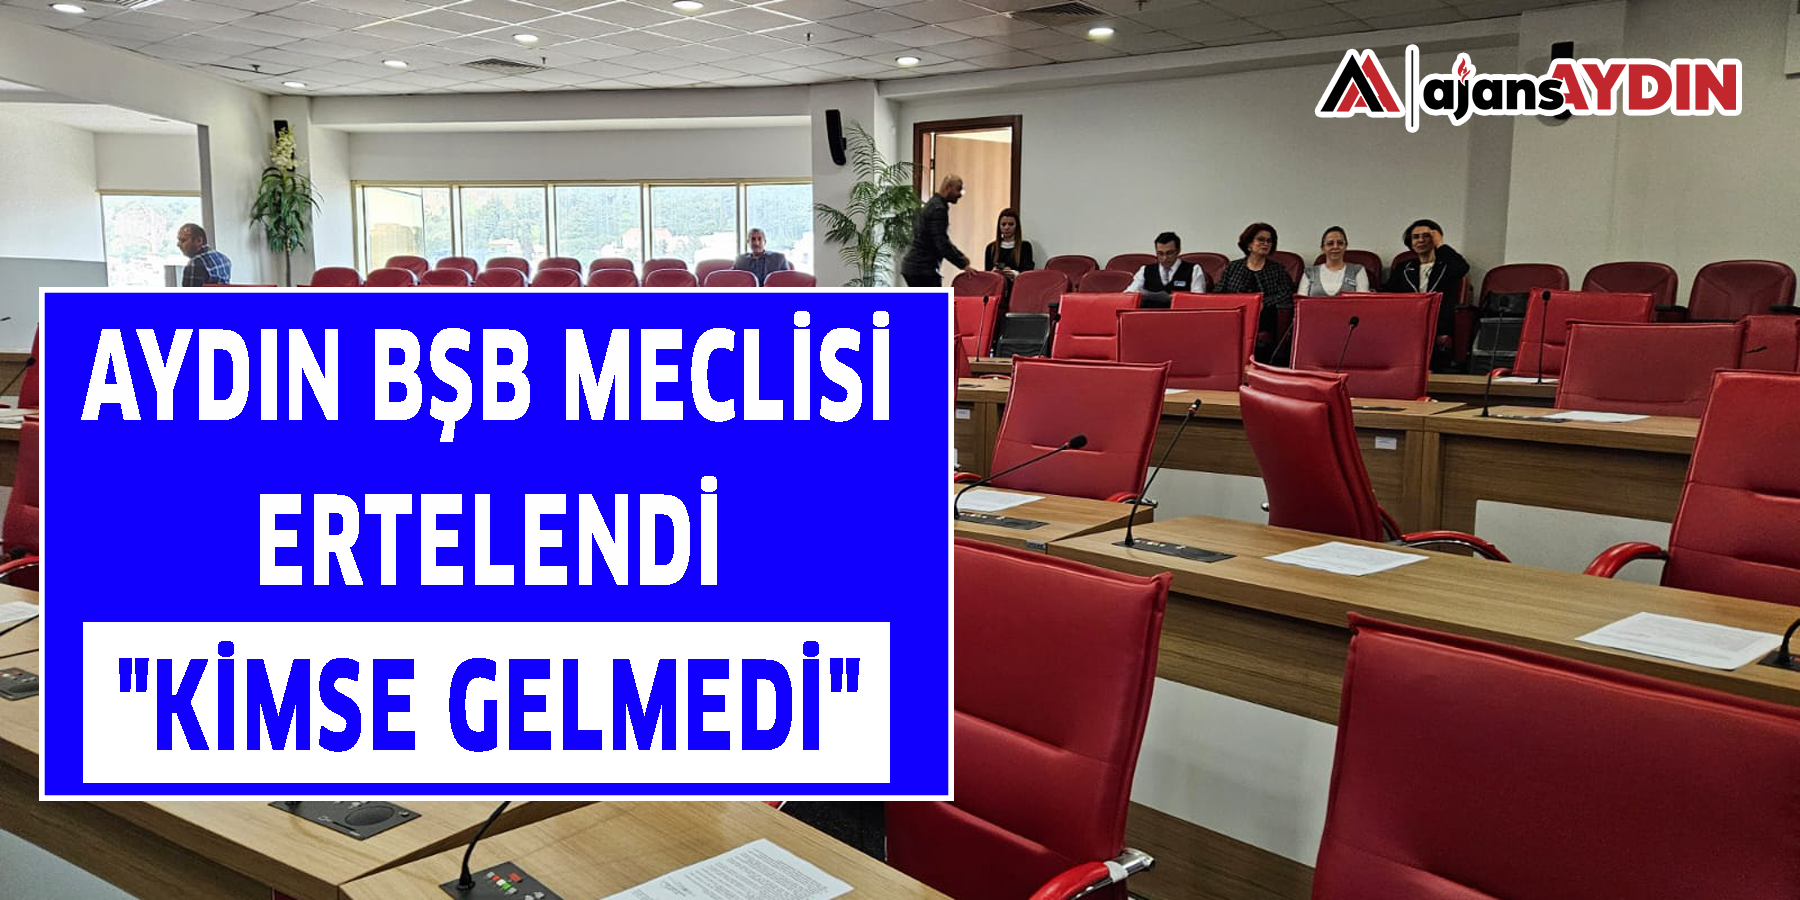 Aydın BŞB meclisi ertelendi: "Kimse gelmedi"